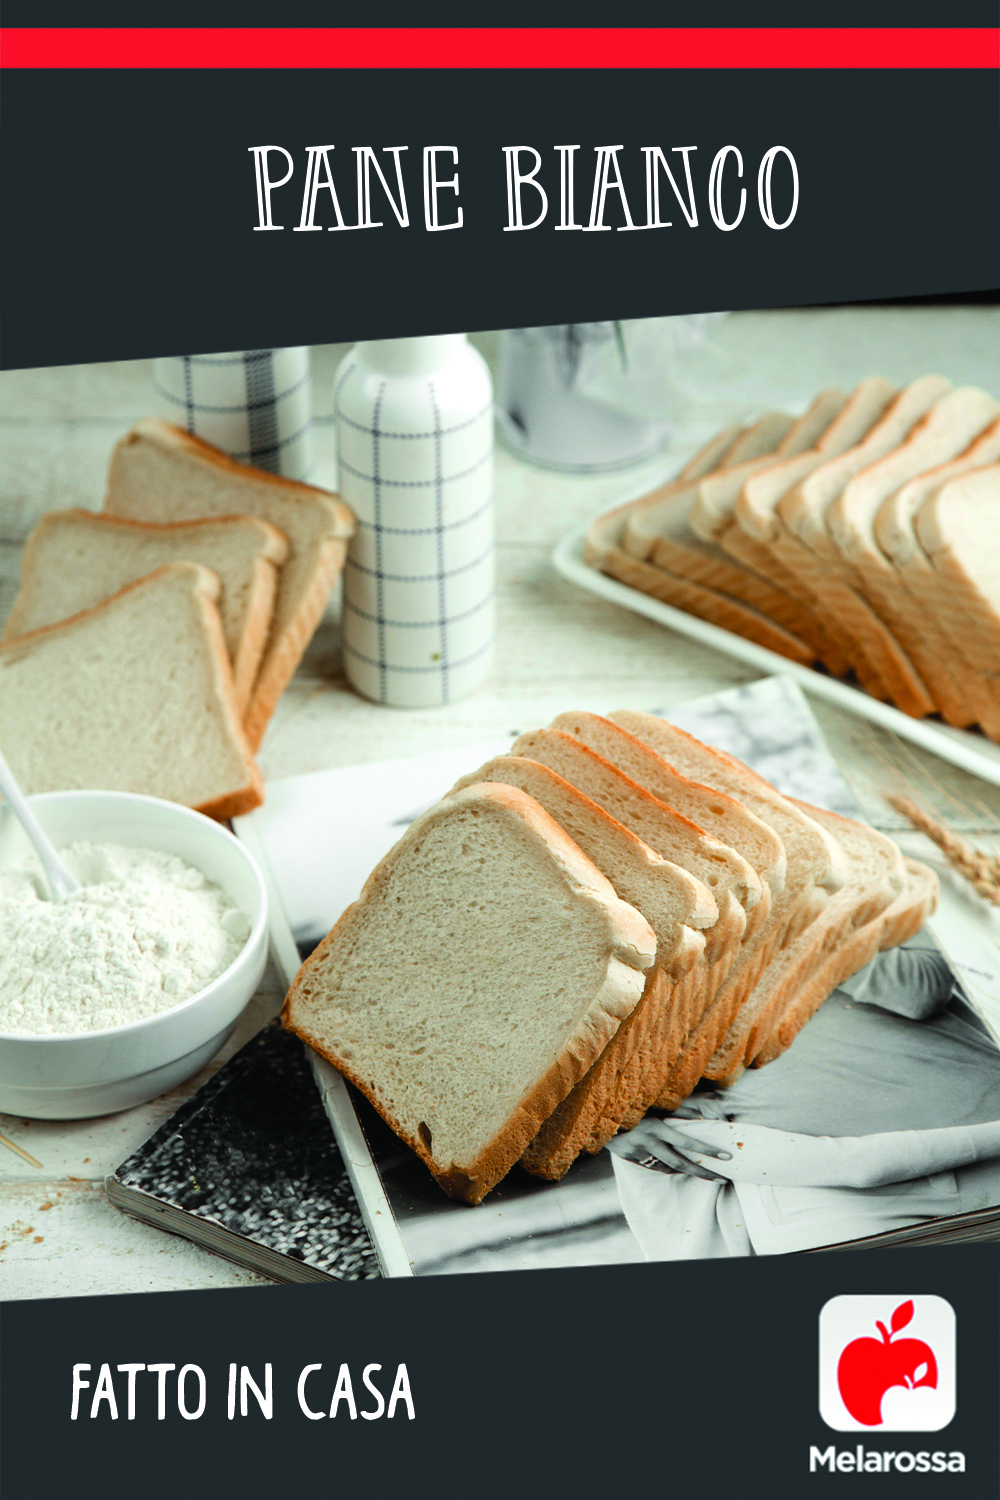 pane bianco fatto in casa: ricetta salutare 